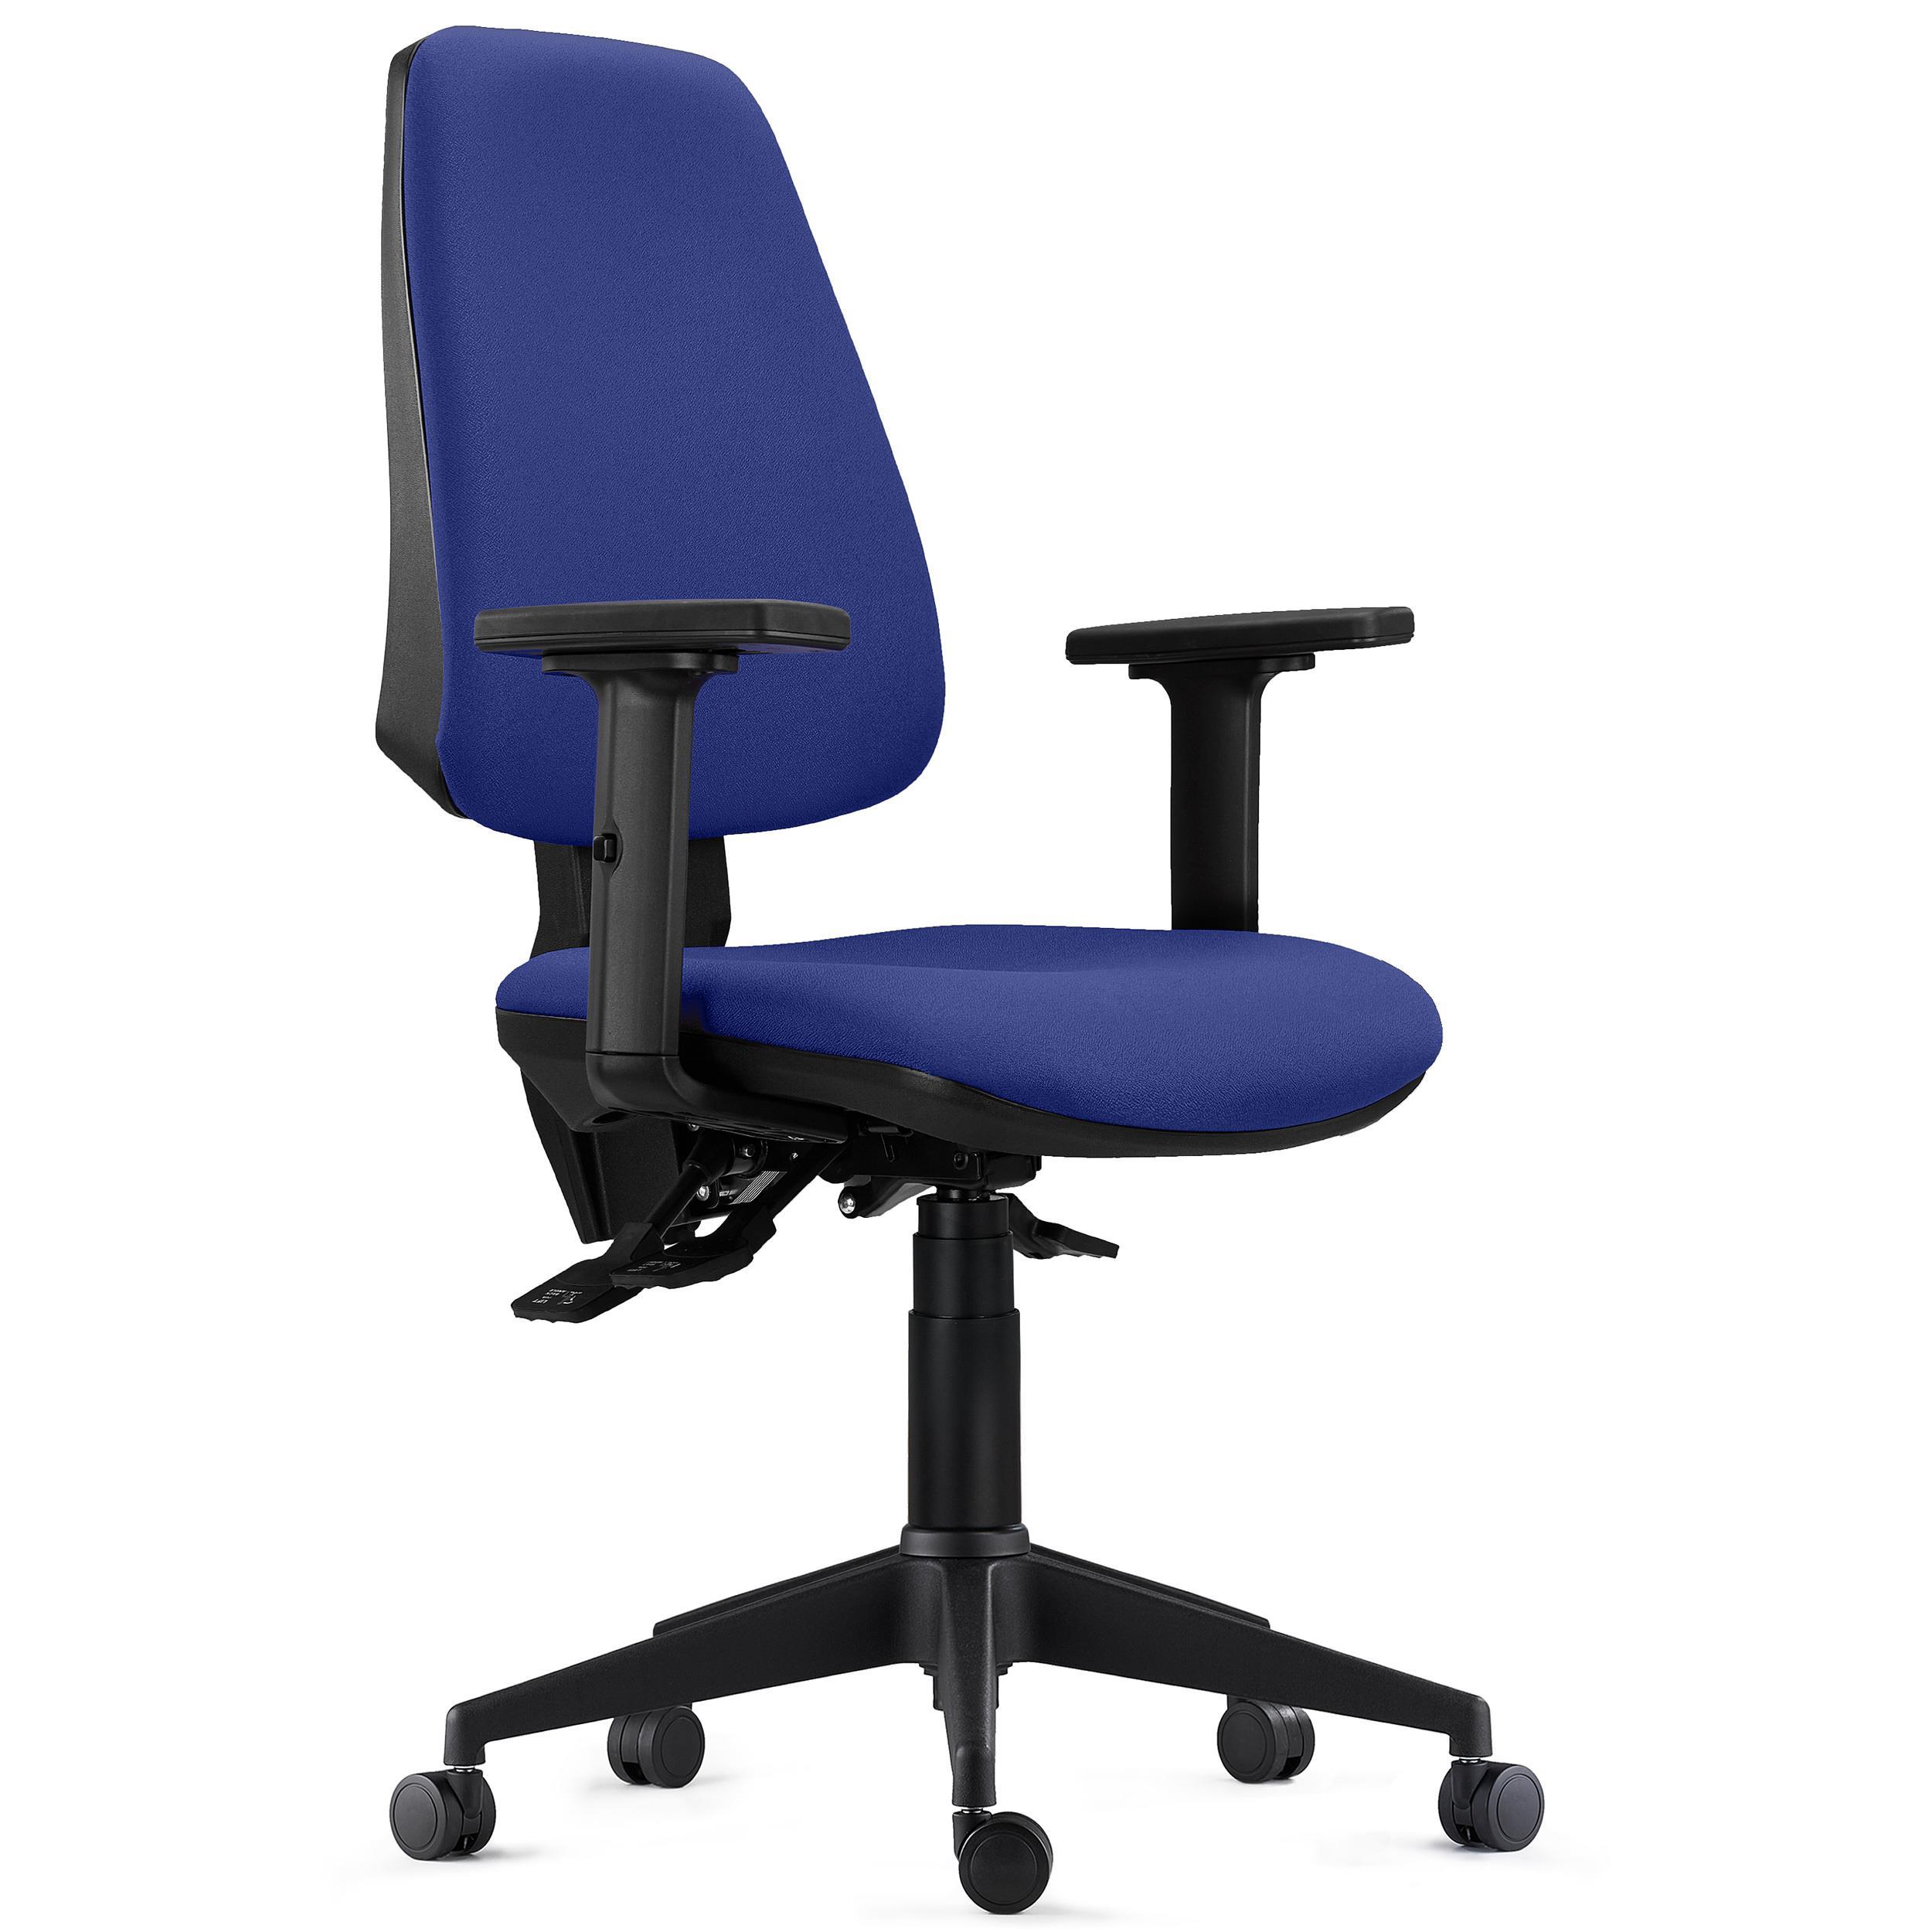 Chaise de Bureau Ergonomique INDIANA PRO, Usage Intensif 8H, avec Accoudoirs Ajustables 2D, en Tissu Bleu Foncé